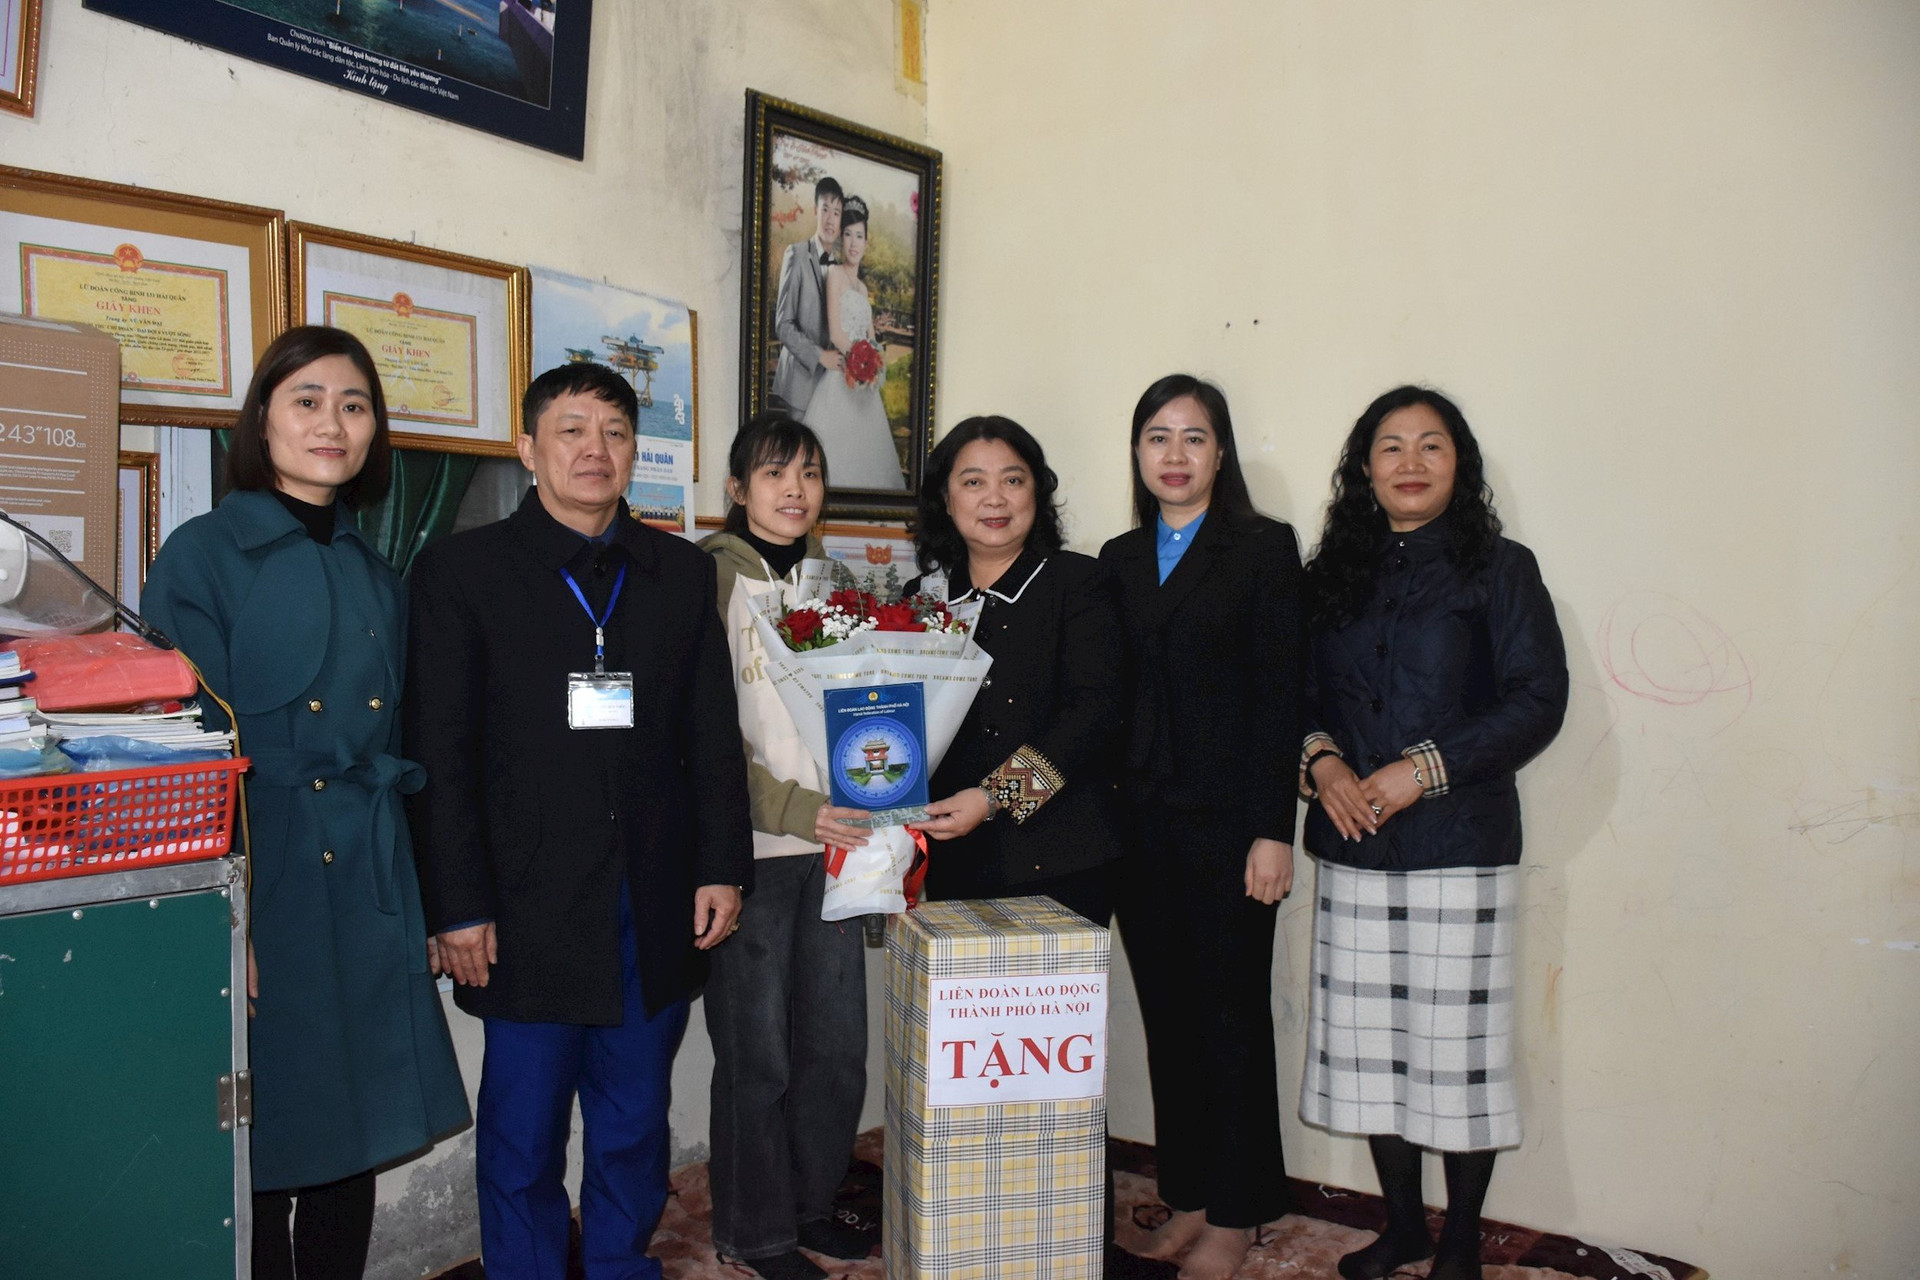 2. Đoàn viên Phùng Thị Ánh Nguyệt - đoàn viên Công đoàn Trường THCS Yên Sơn nhận món quà ý nghĩa từ tổ chức Công đoàn